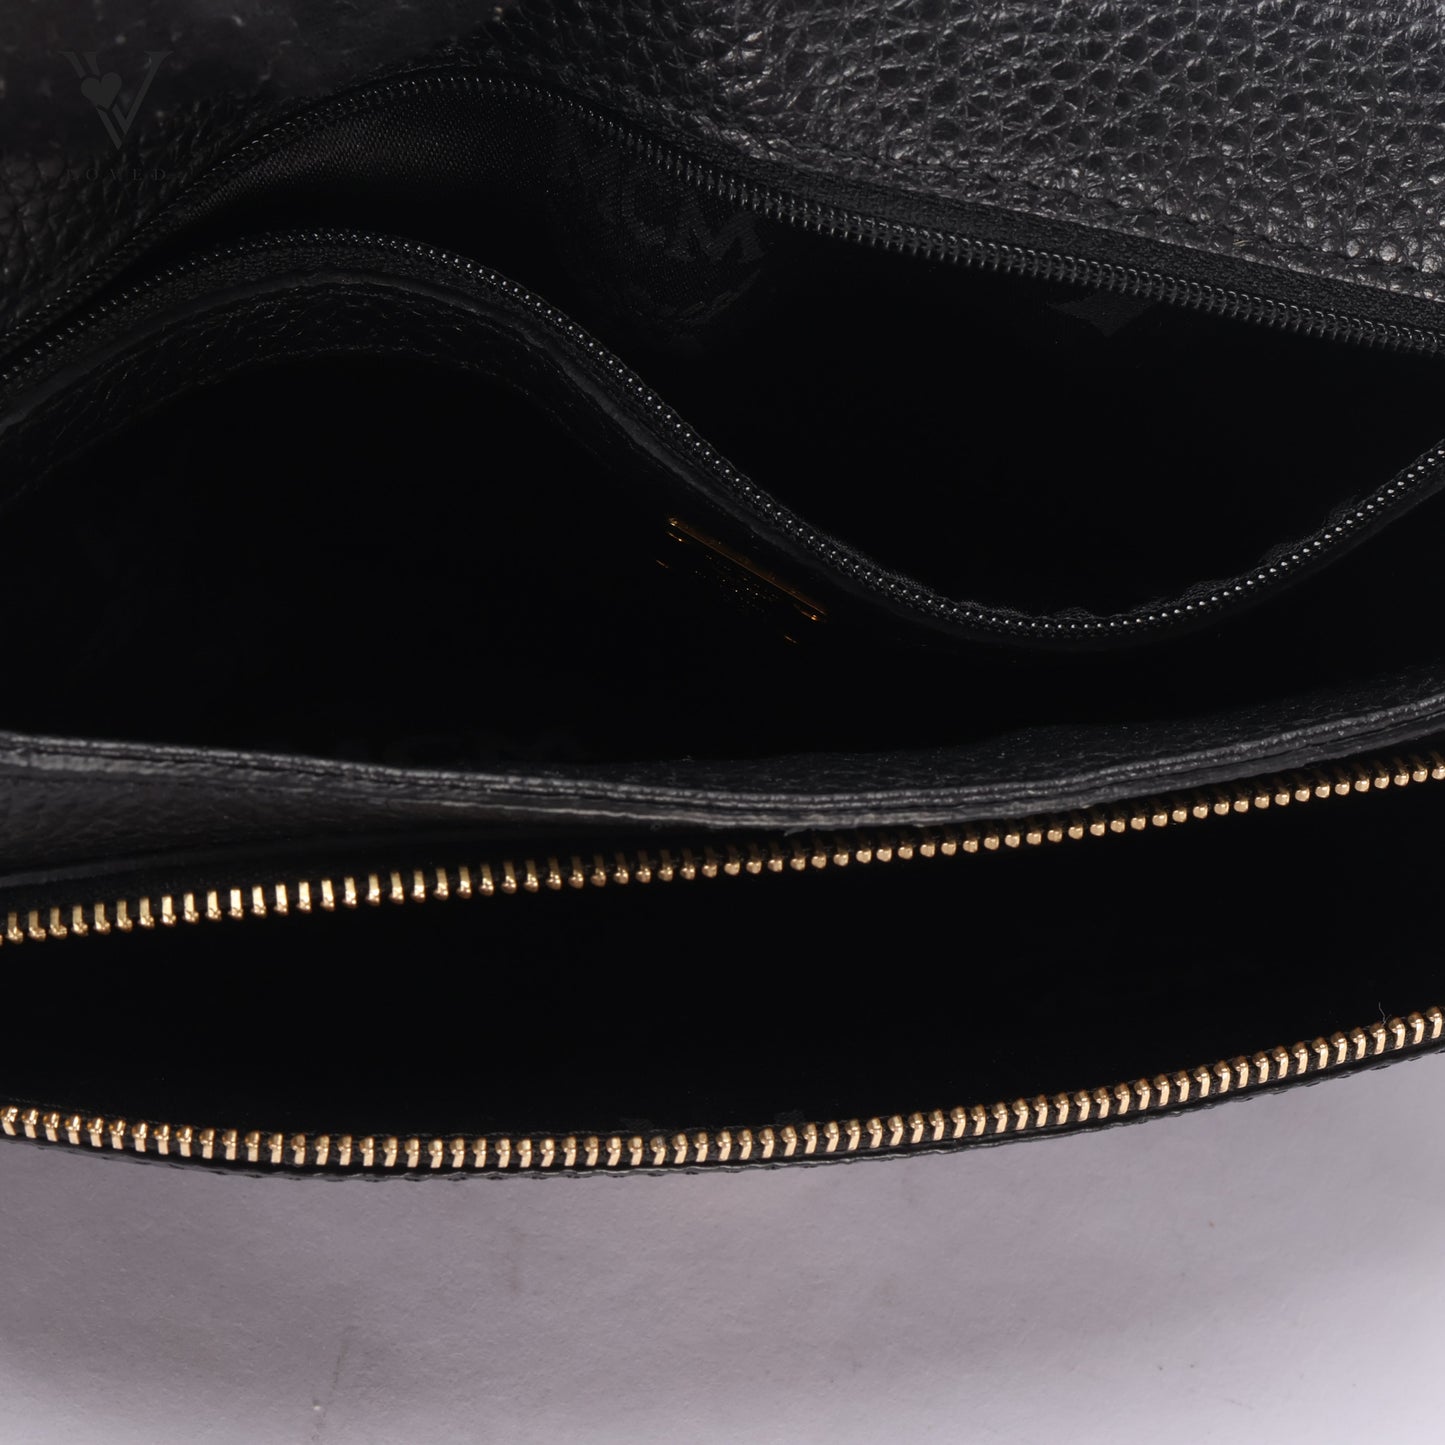 Studded Black Leather Chain Shoulder Bag